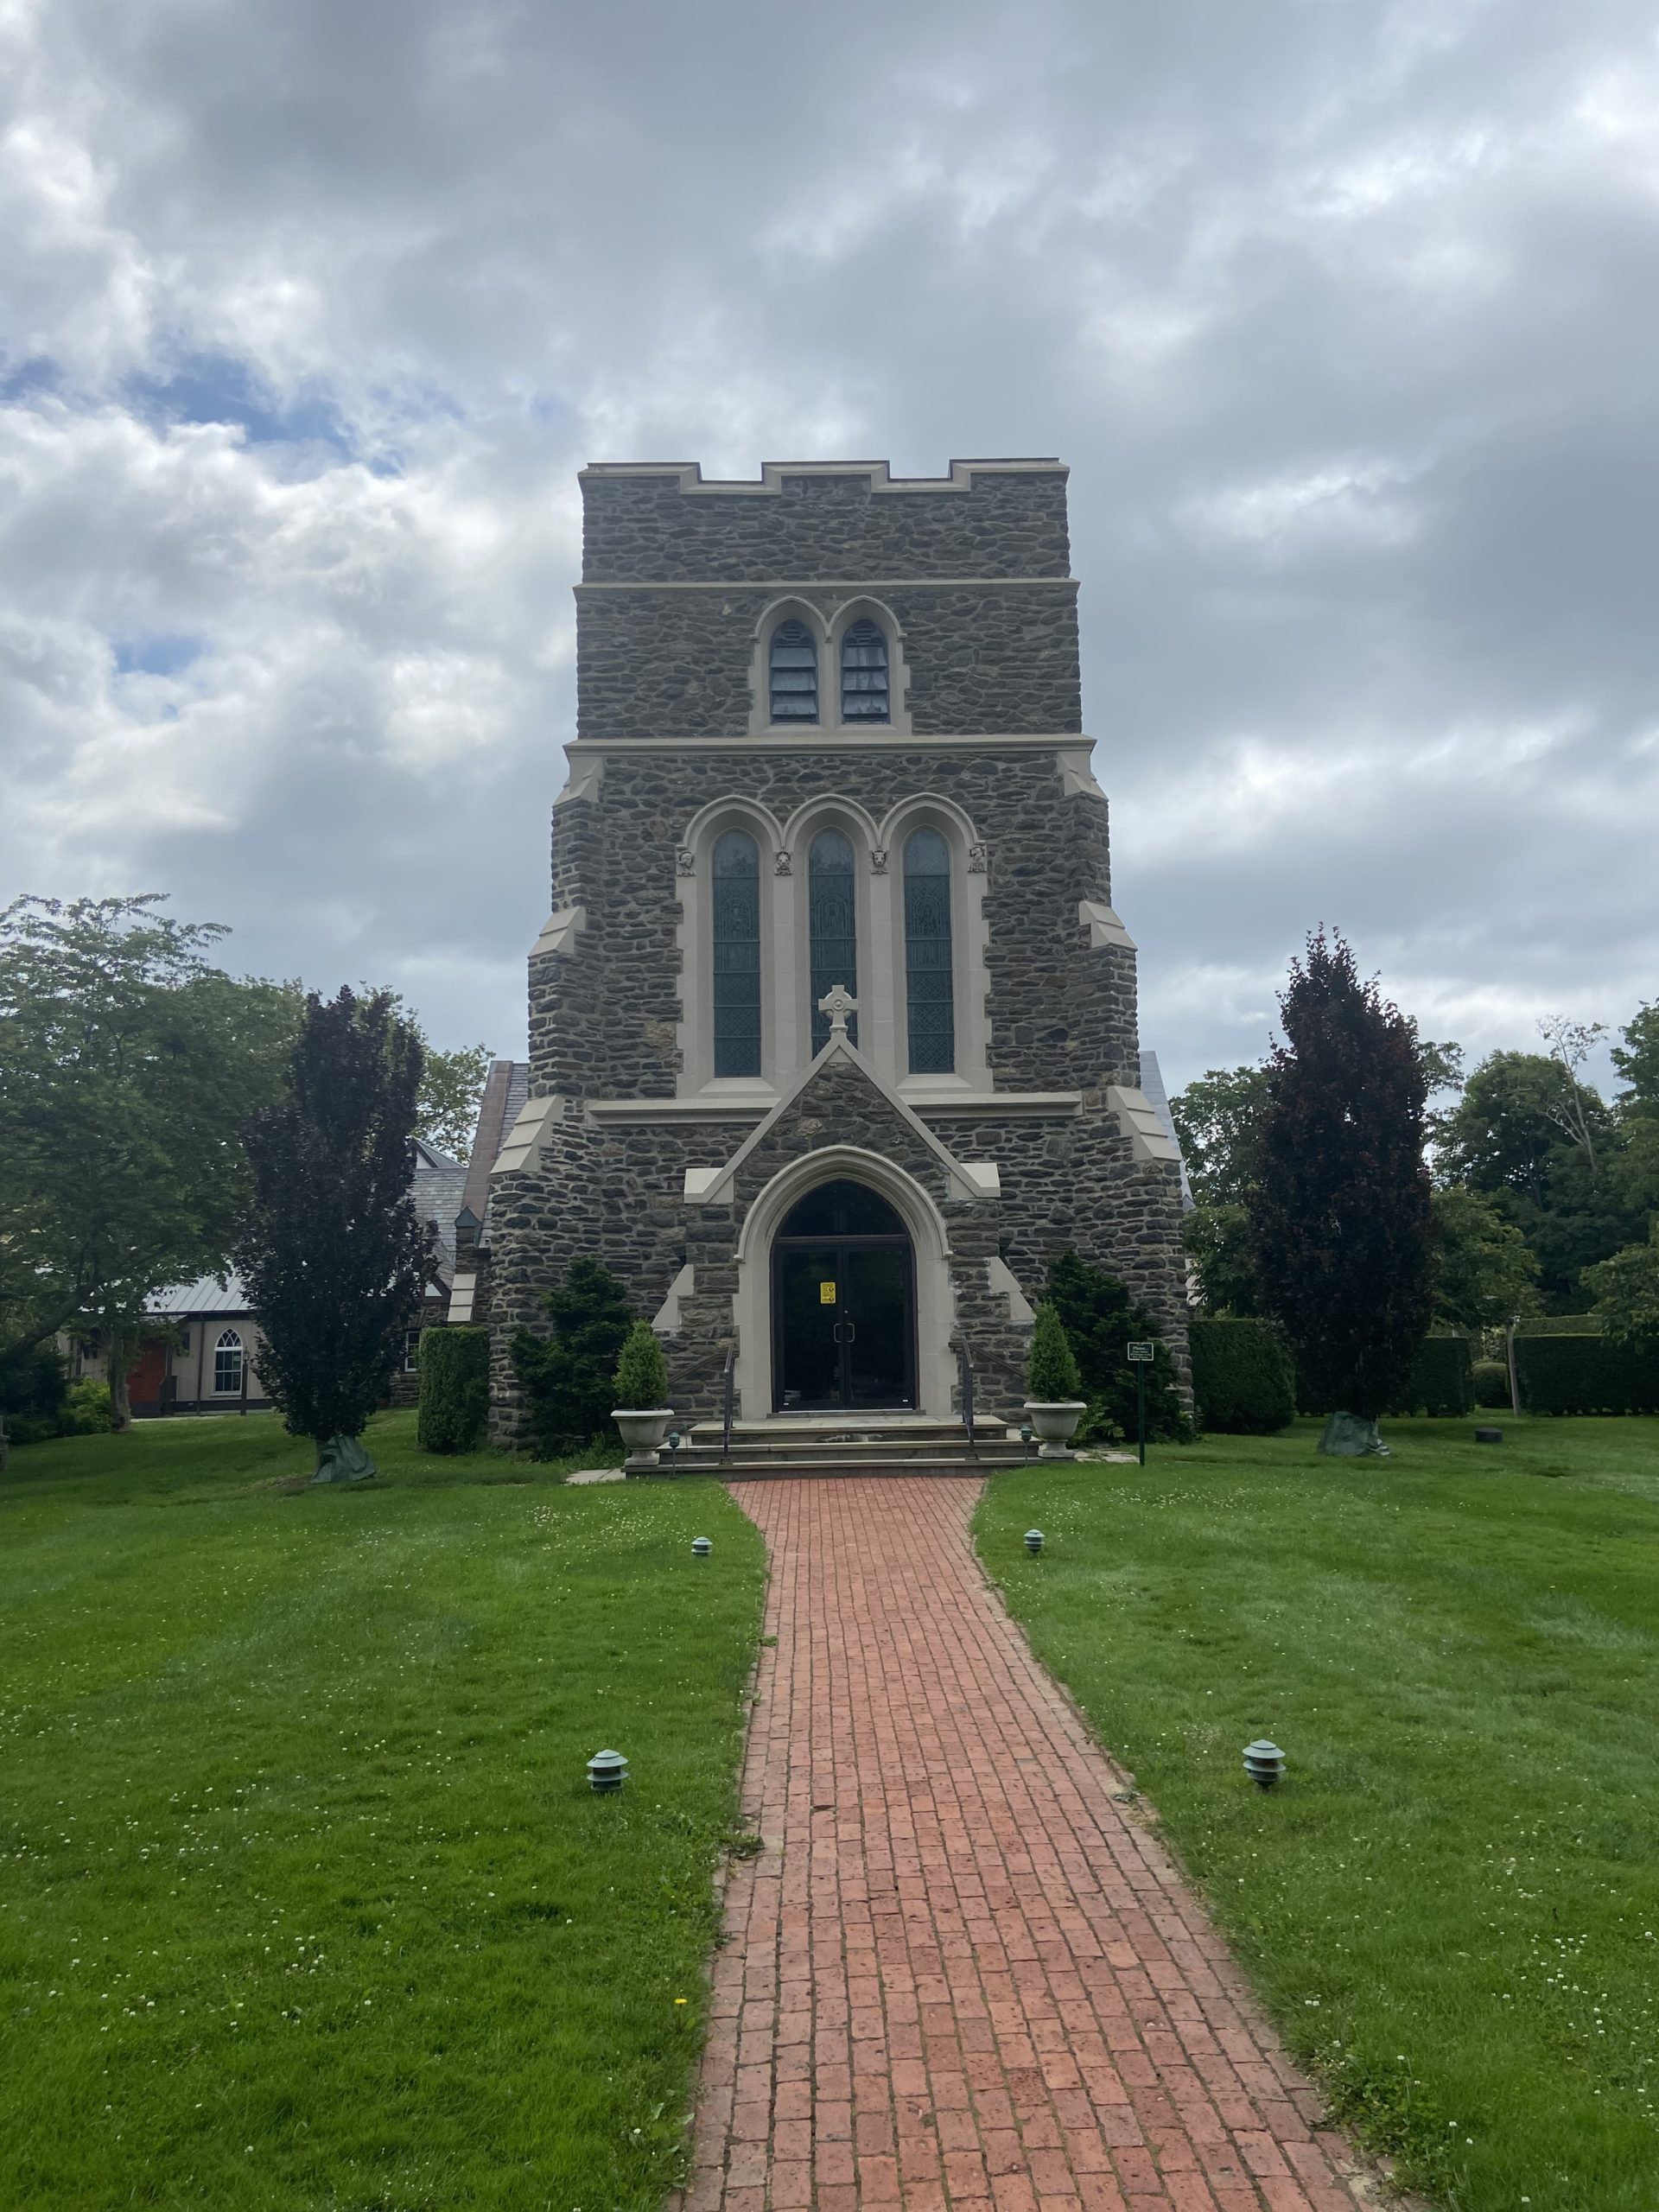 St. Luke's Episcopal Church in East Hampton.